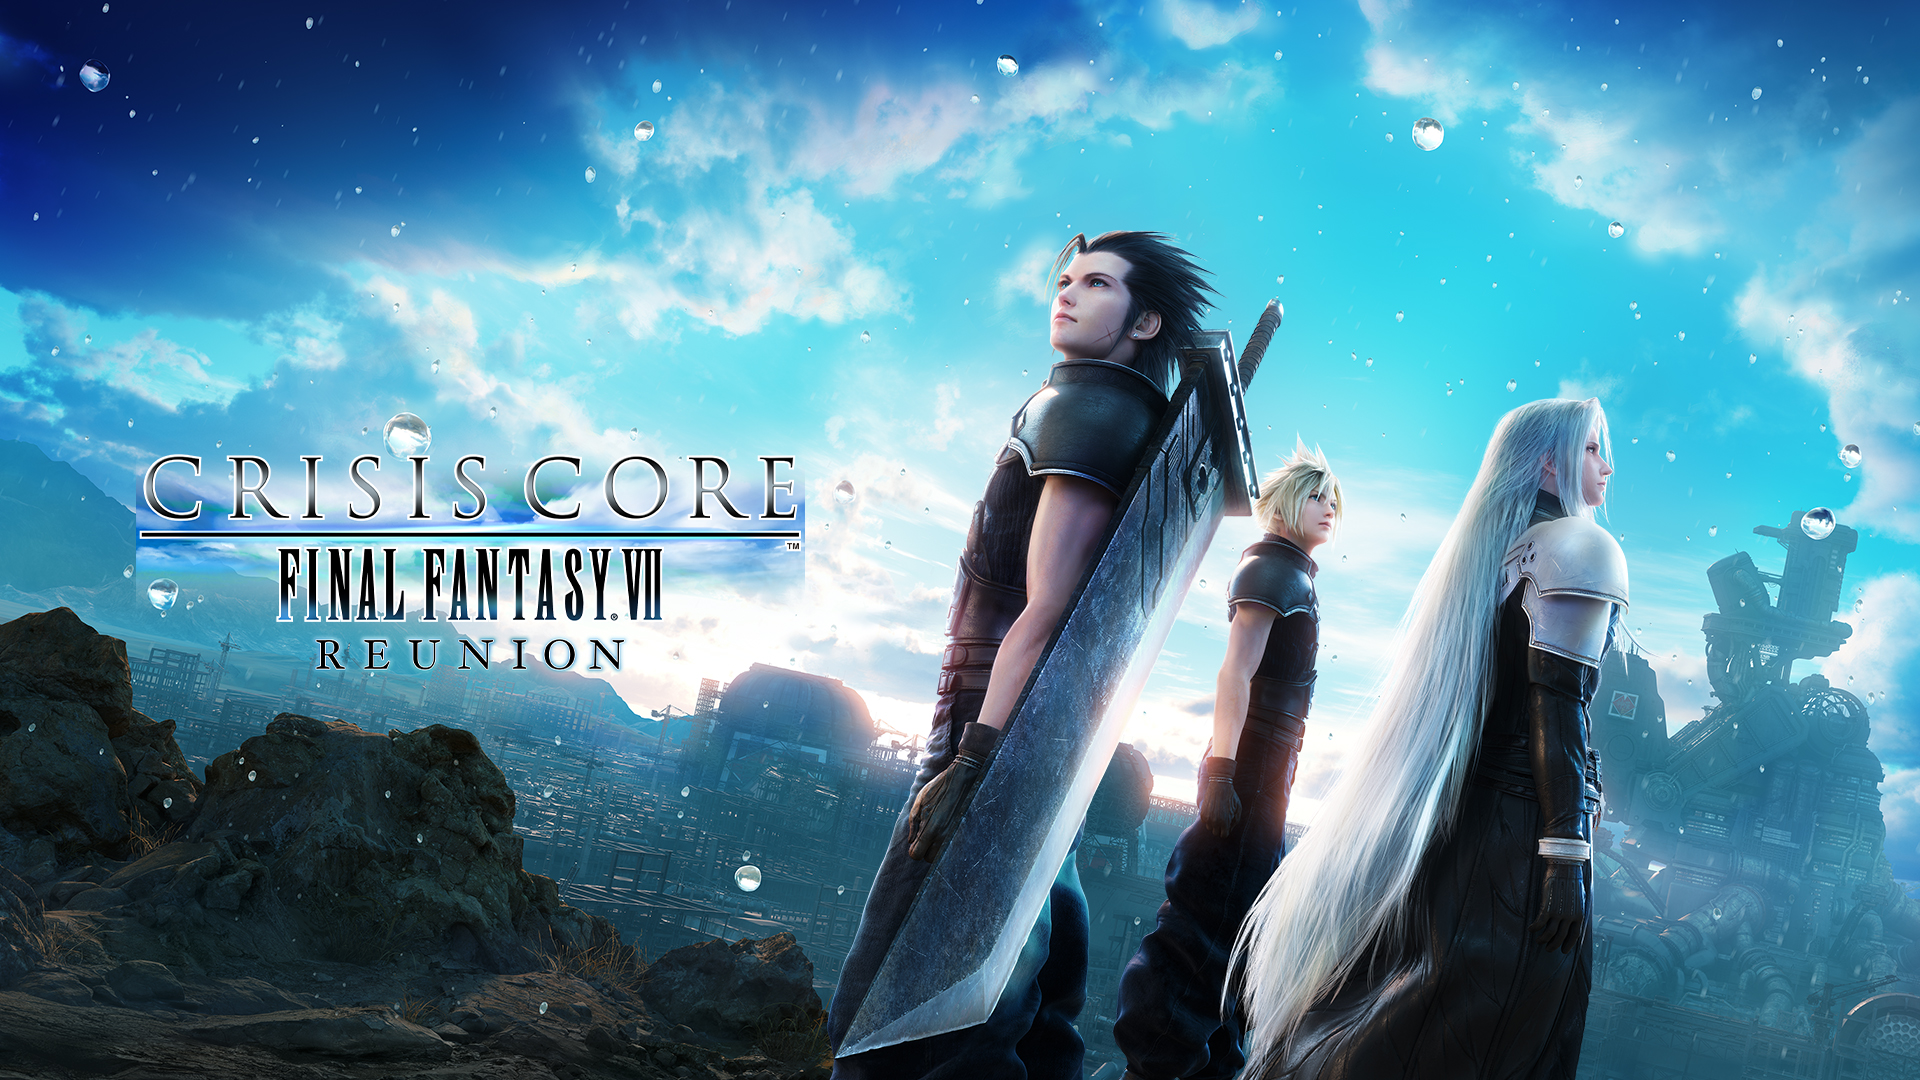 Final Fantasy VII Rebirth Preview - Square Enix Talks Aerith's Big Scene -  Game Informer